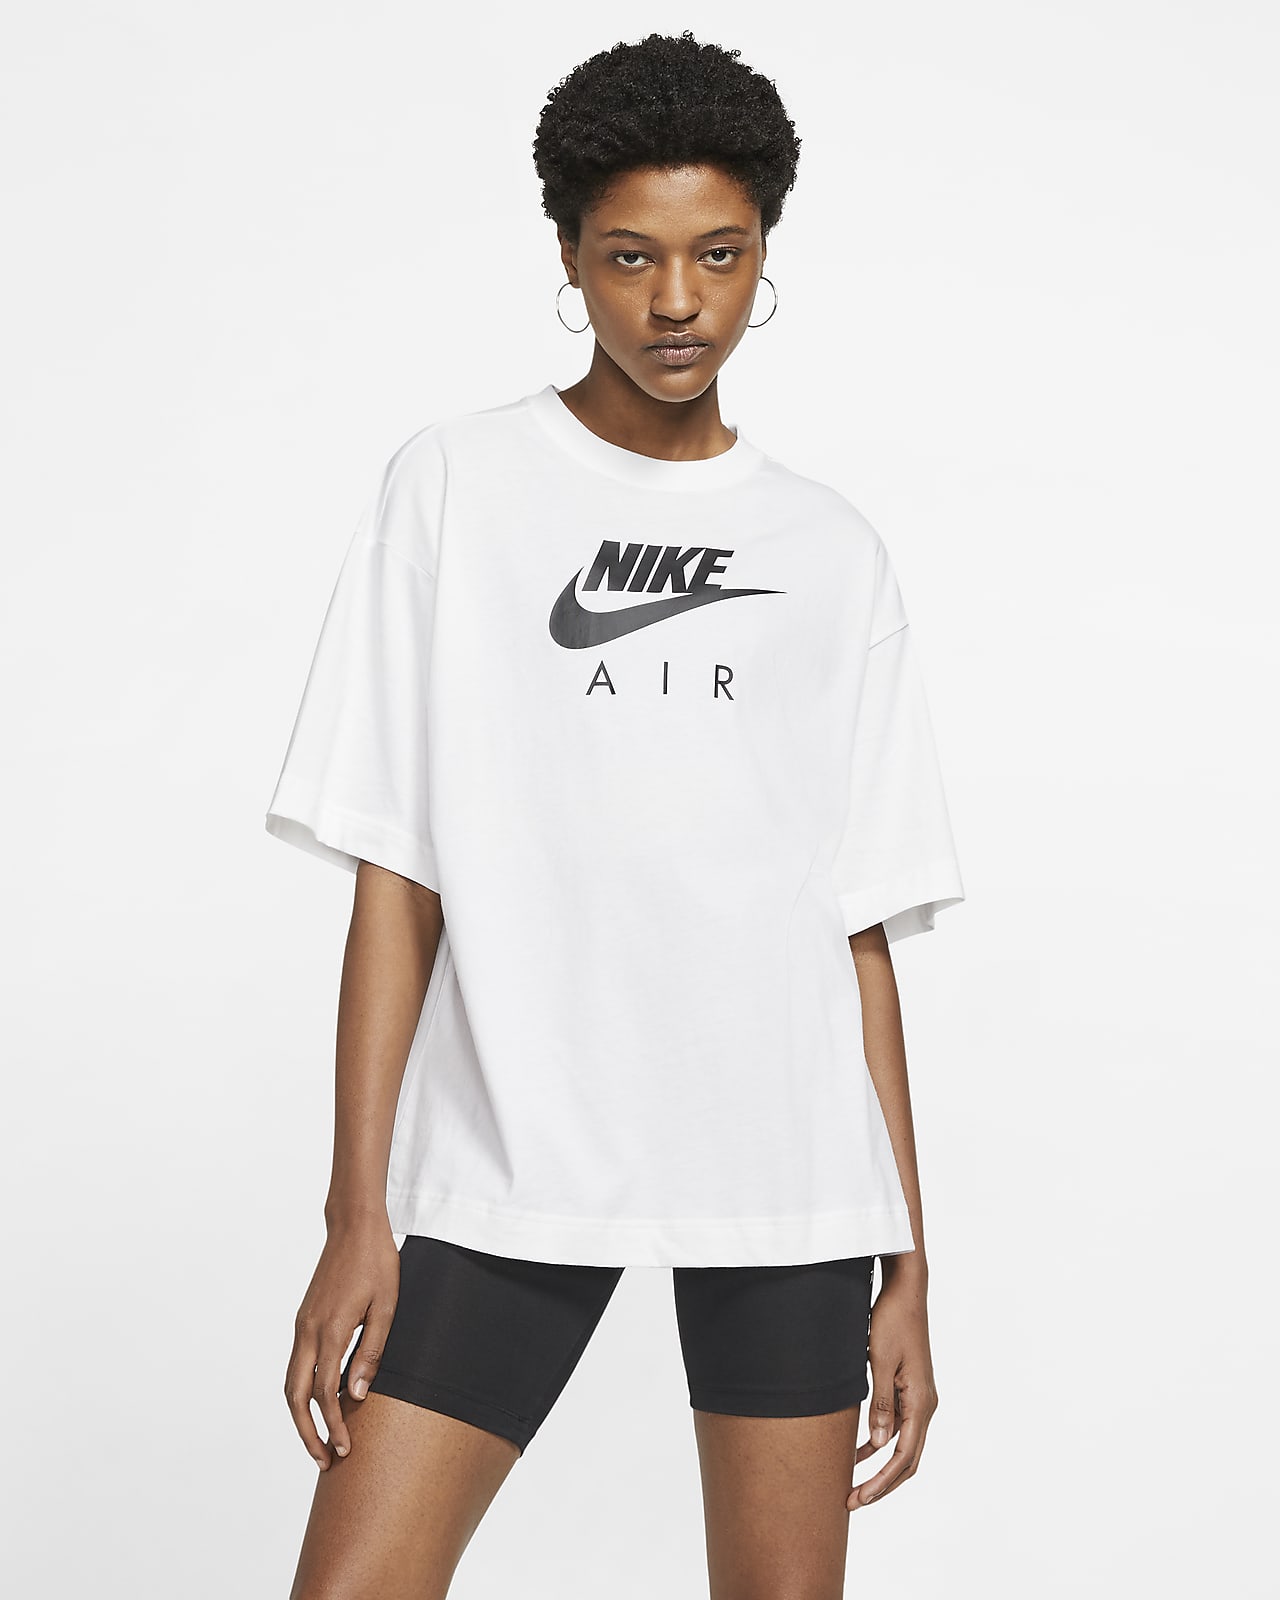 Nike Air Women's Short-Sleeve Top. Nike MA